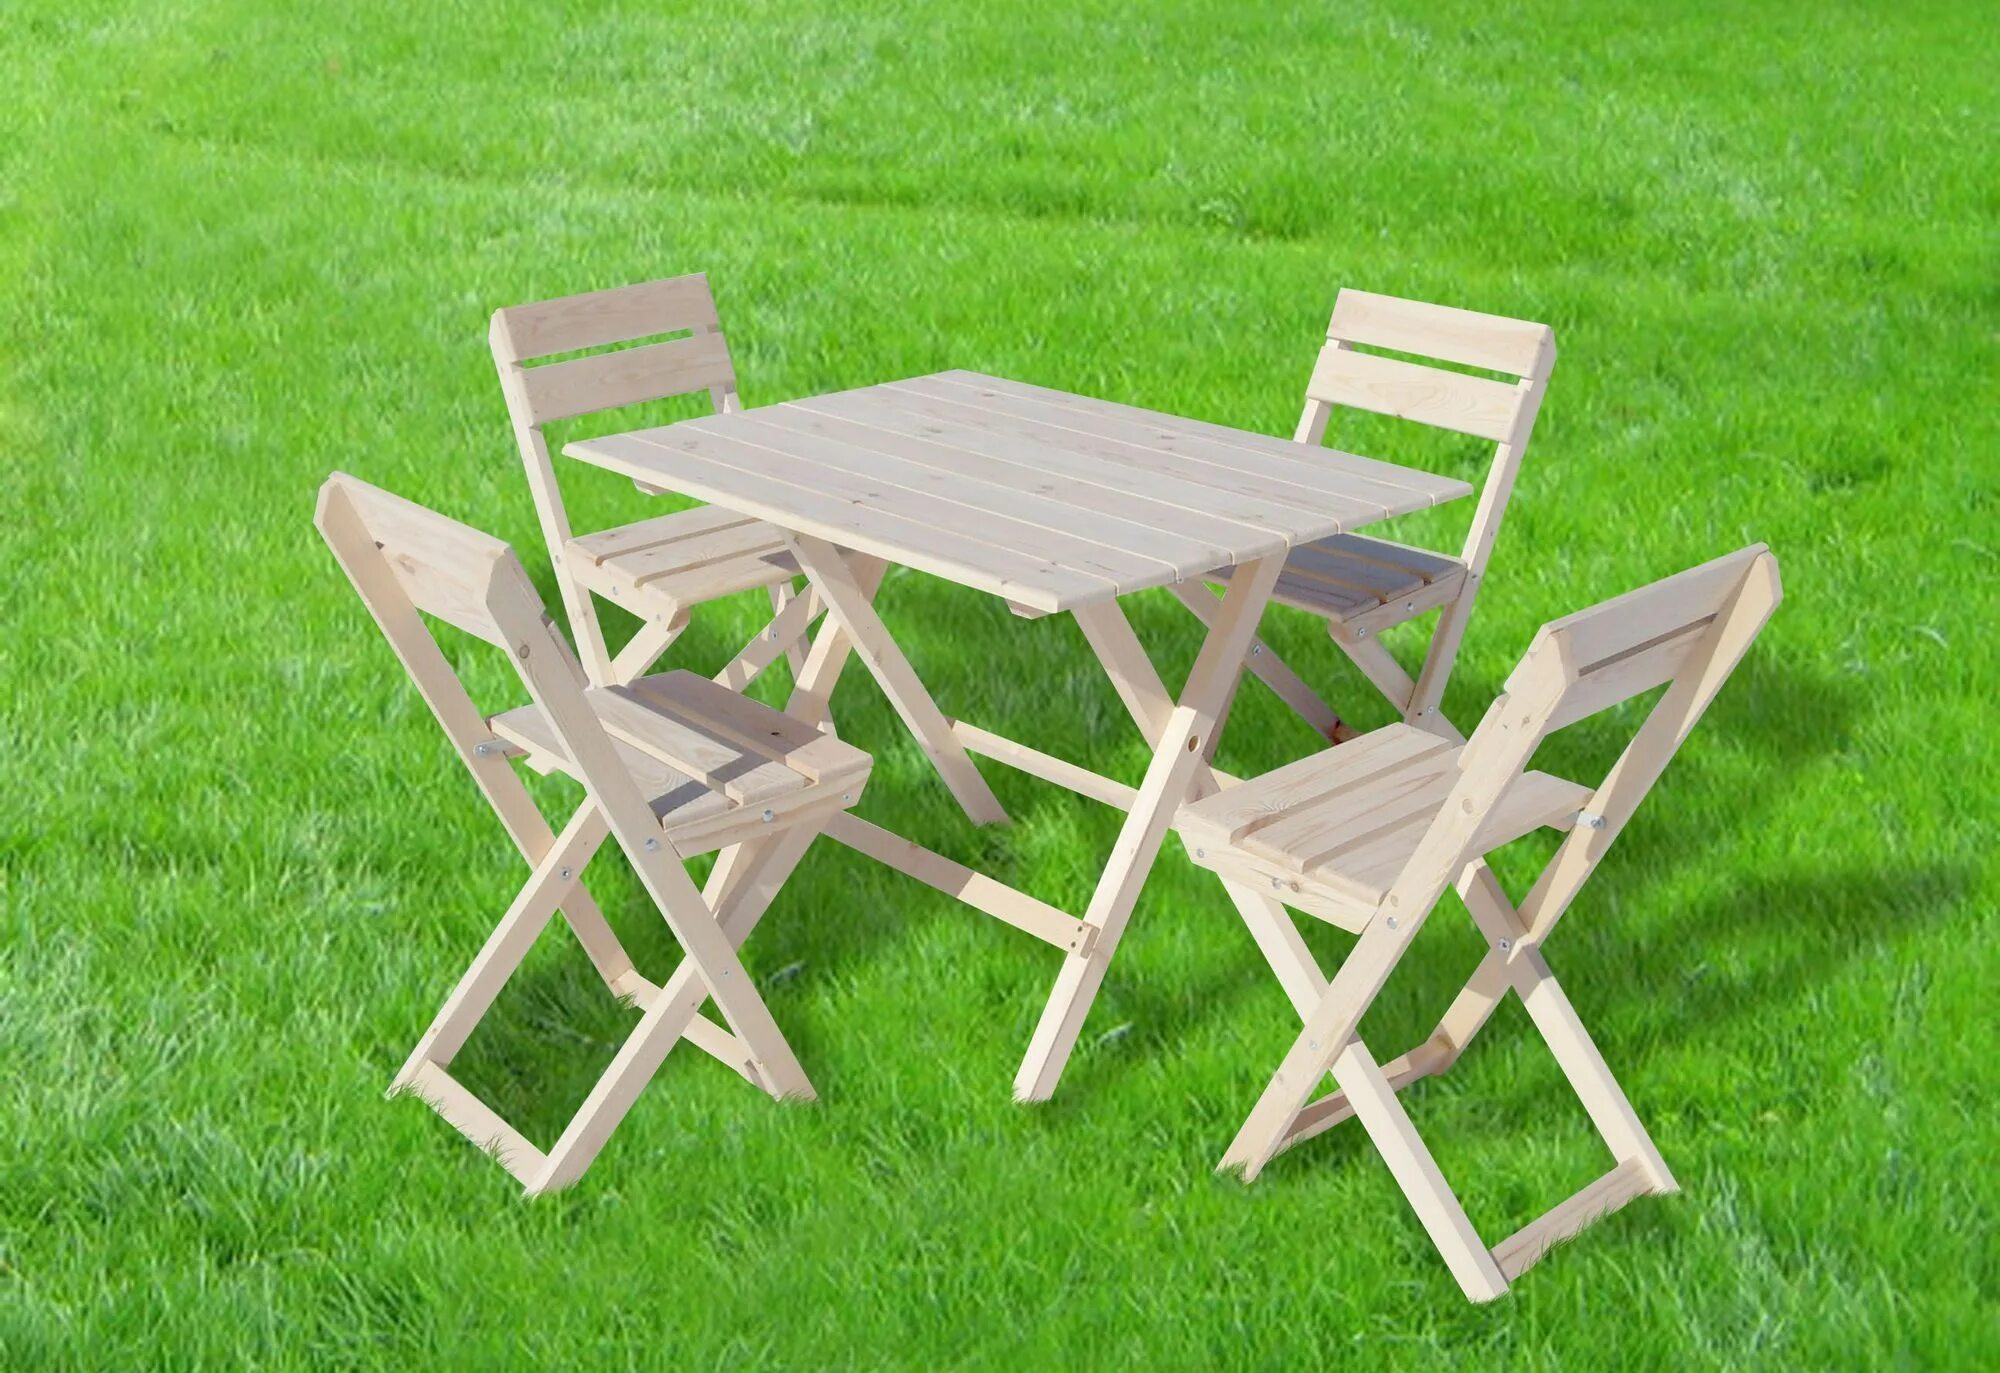 Стол 4 заказать. Комплект садовой мебели(стол складной + 2 стула), дерево дуб. Набор мебели Алабия пикник. Набор мебели складной hq-m108. Садовый стол складной Vega 85.